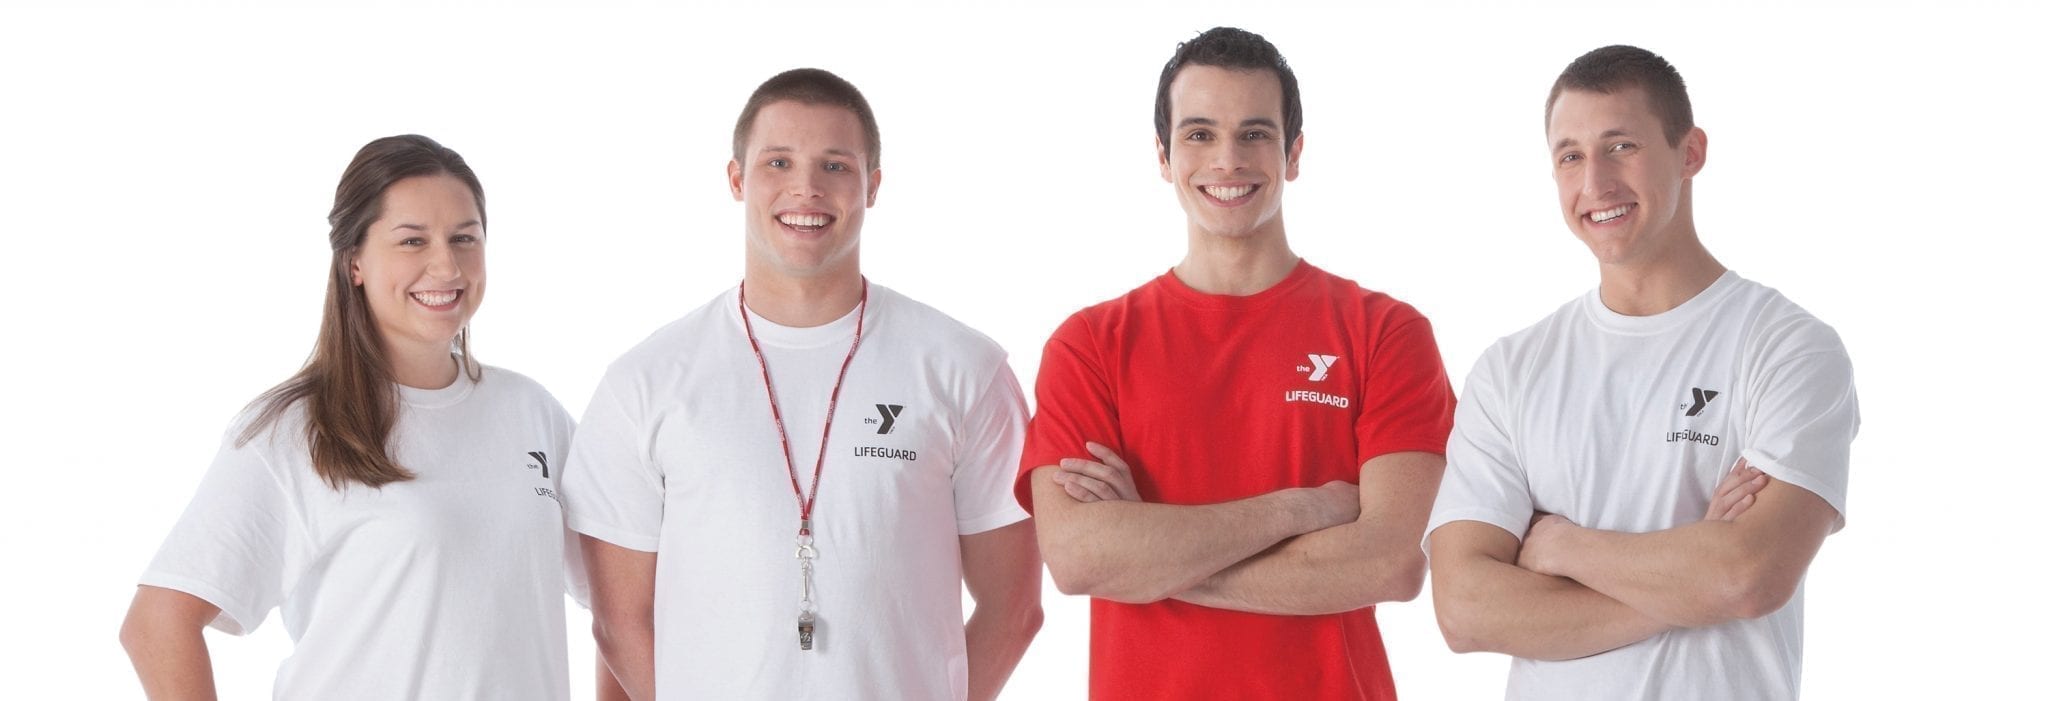 4 lifeguards smiling